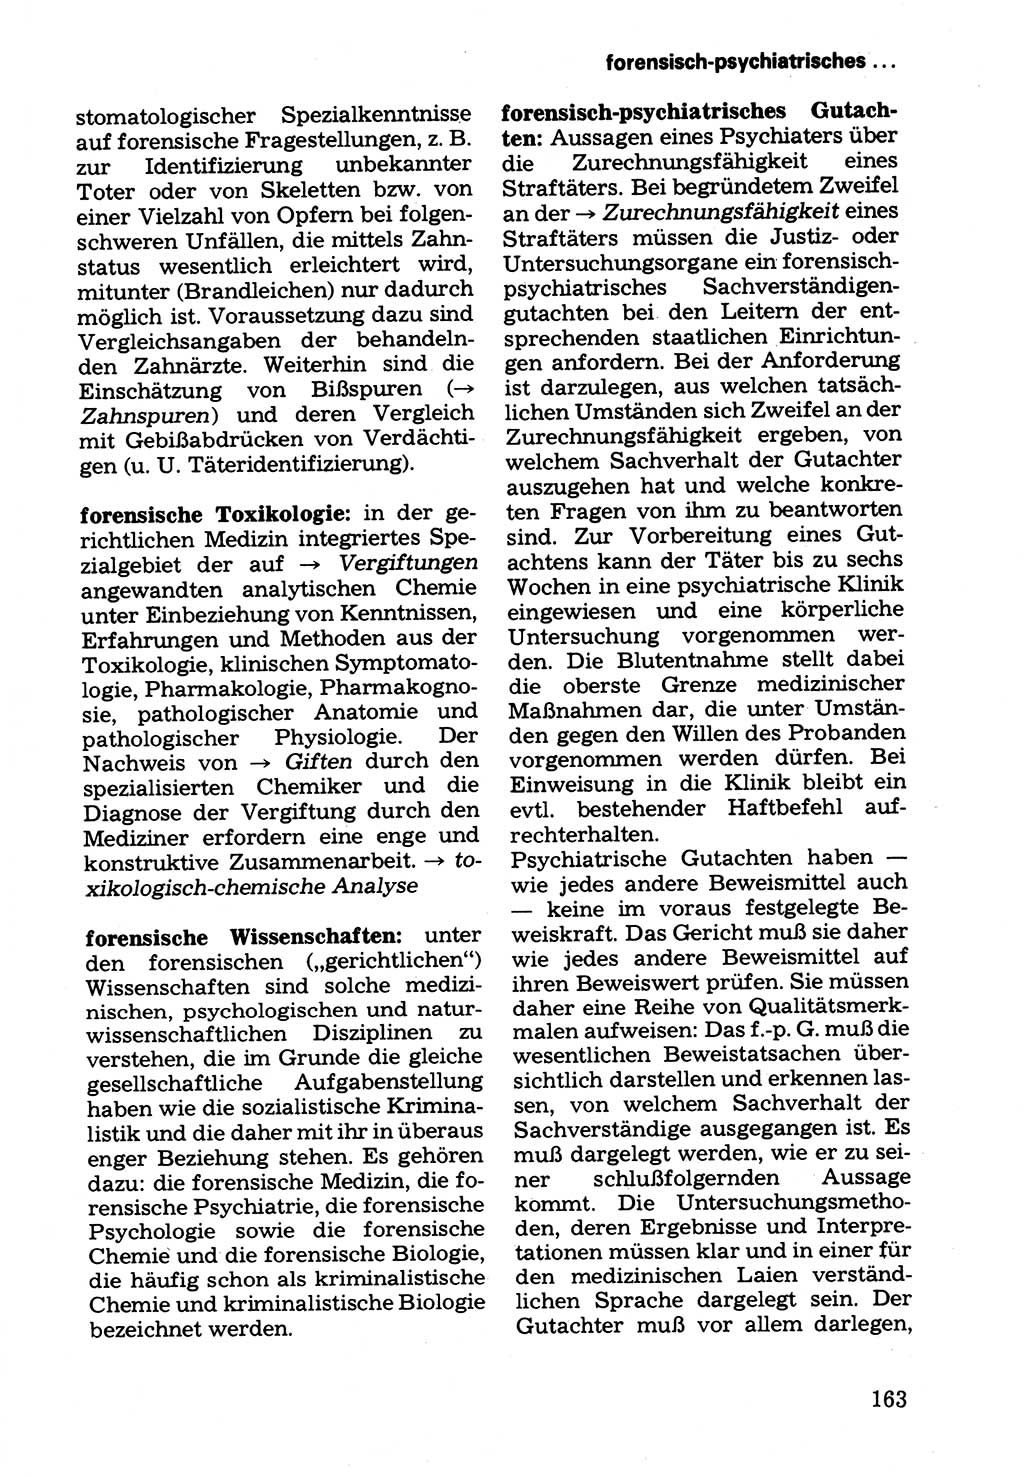 Wörterbuch der sozialistischen Kriminalistik [Deutsche Demokratische Republik (DDR)] 1981, Seite 163 (Wb. soz. Krim. DDR 1981, S. 163)